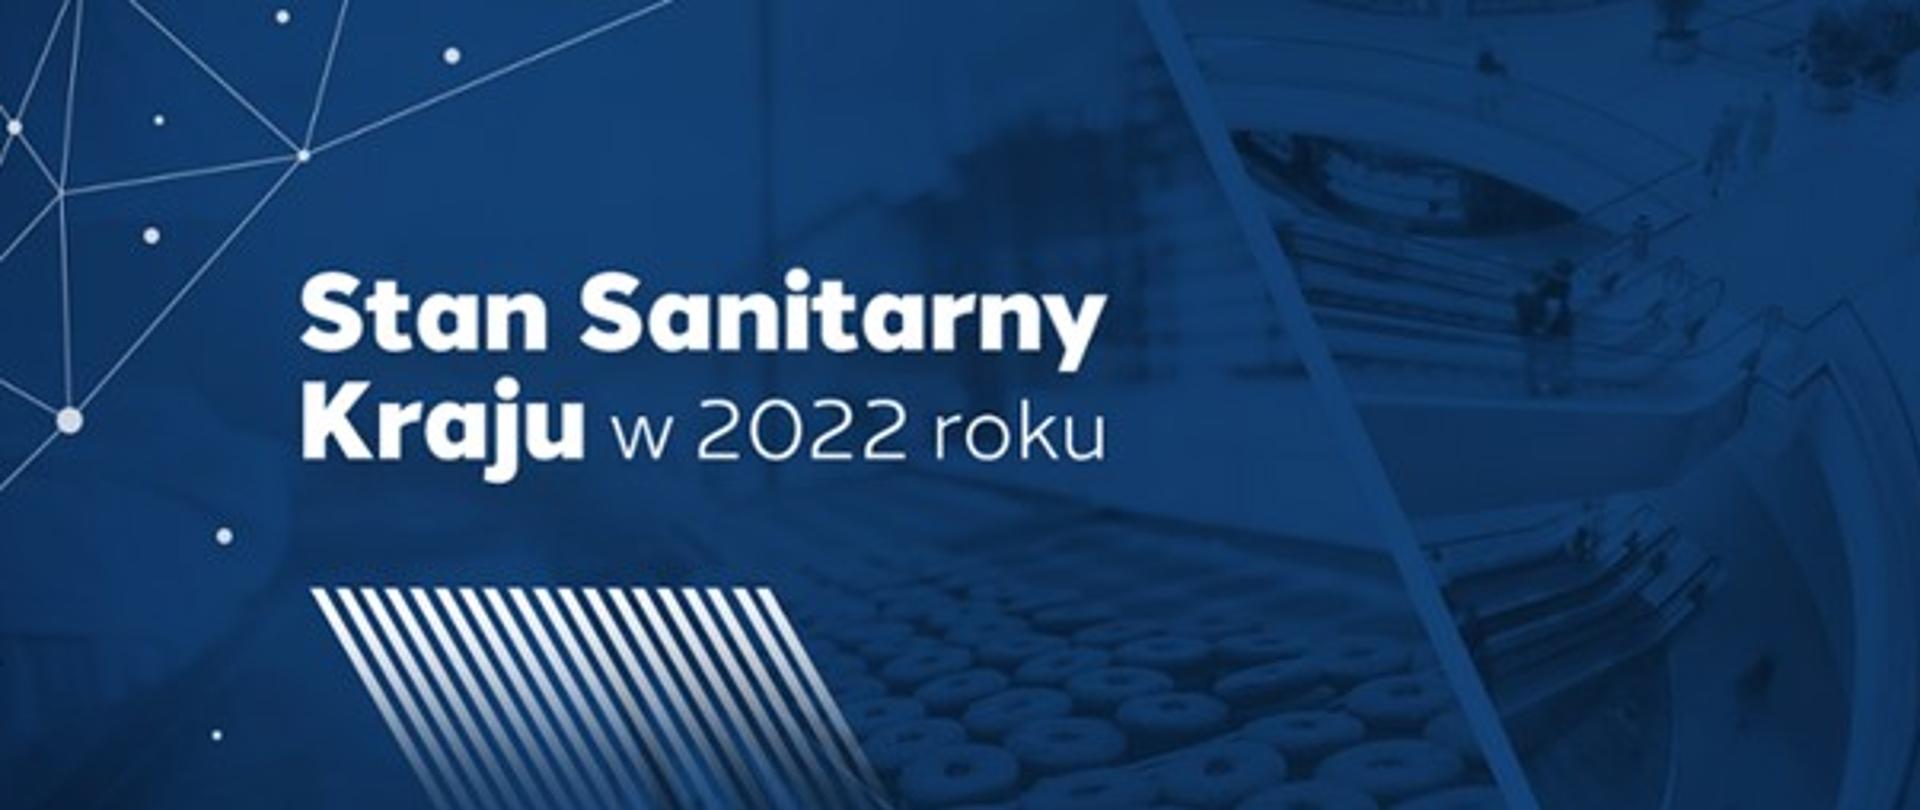 Napis Stan sanitarny kraju w 2022 roku na granatowym tle